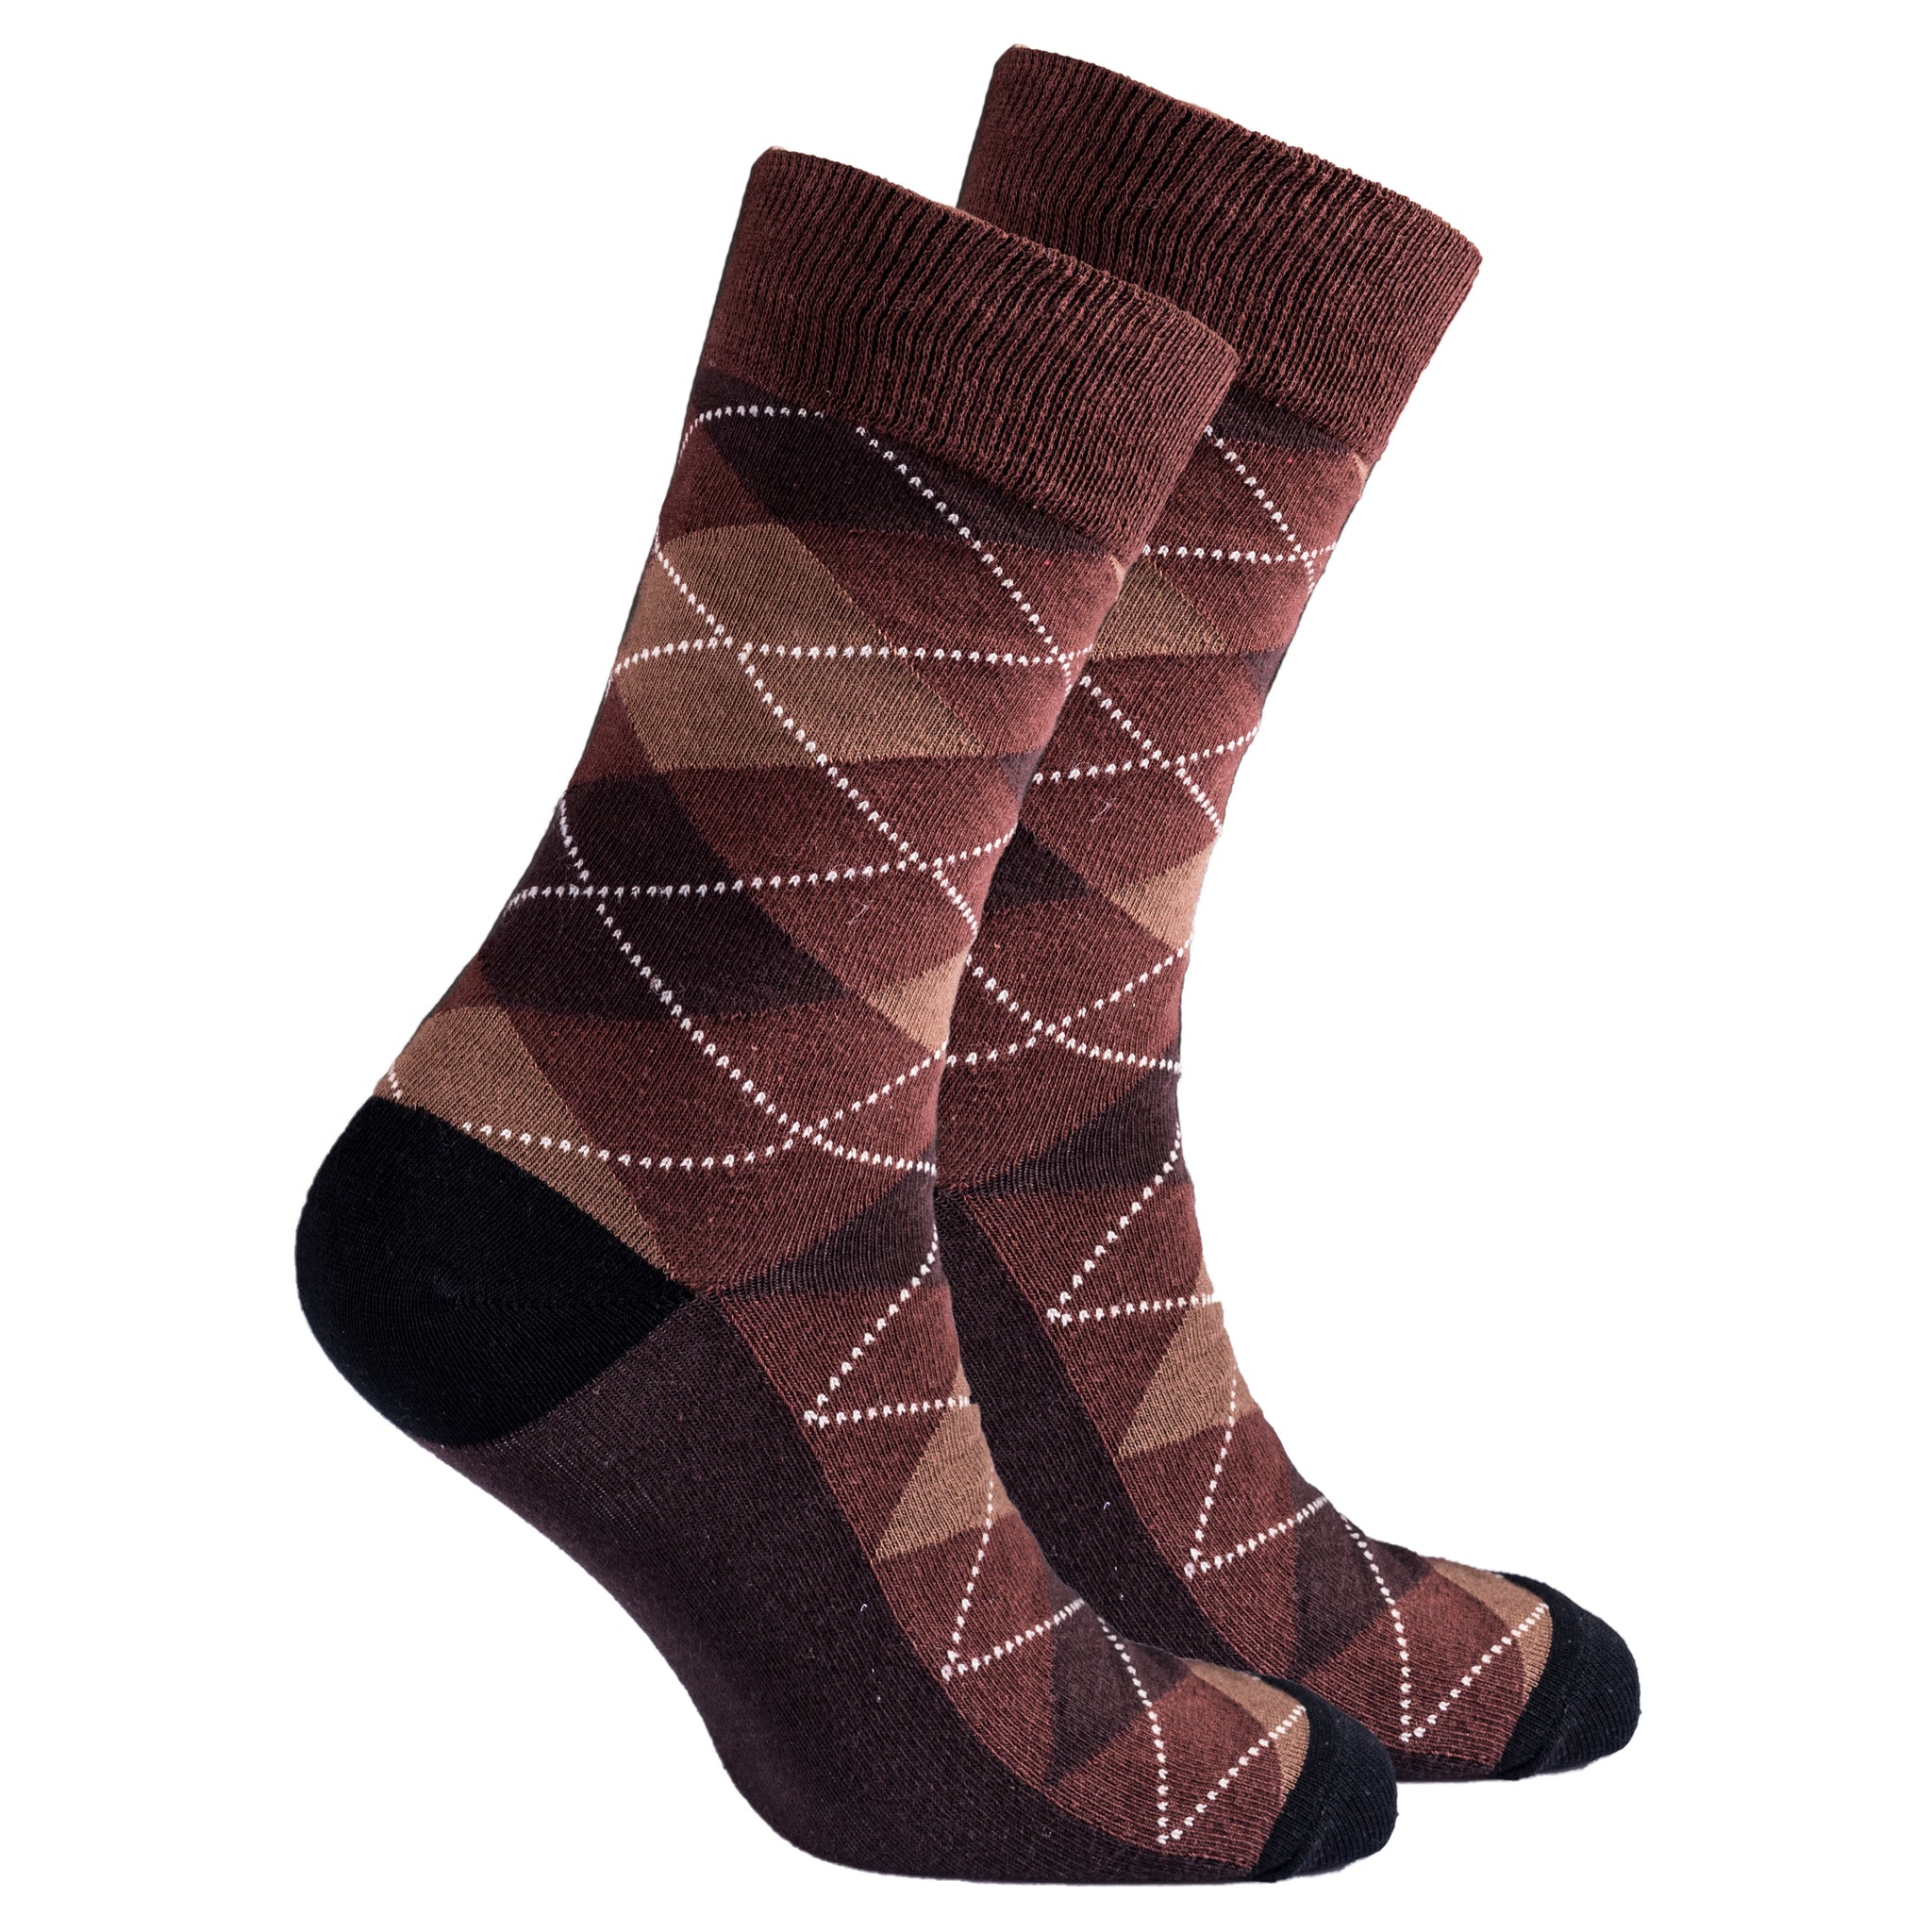 Men's Mocha Argyle Socks